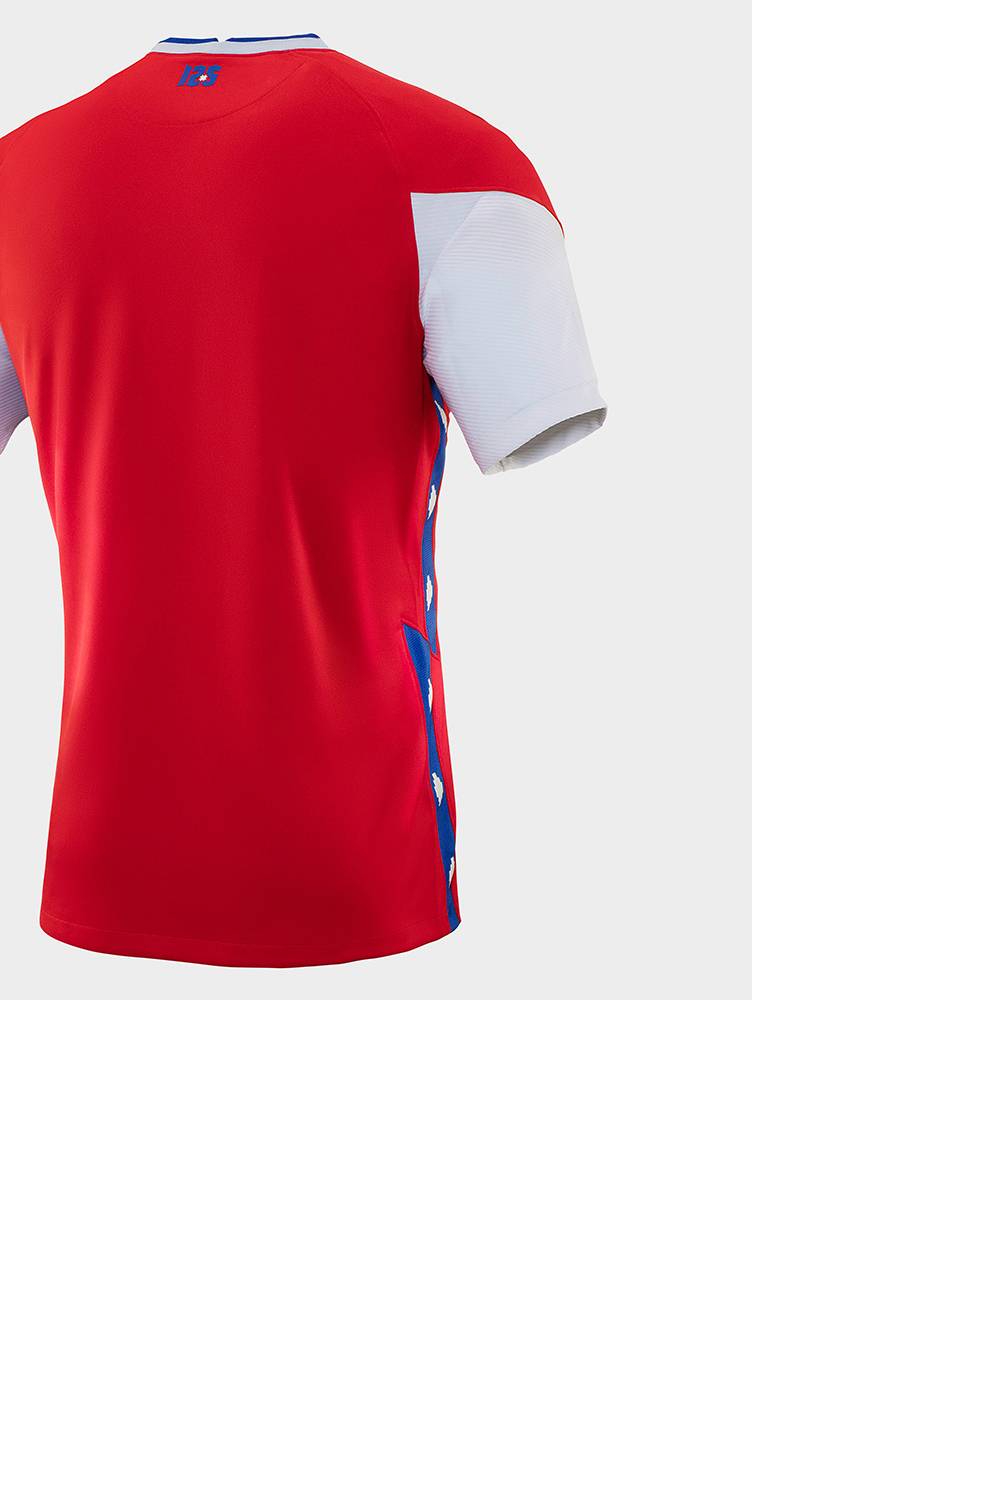 NIKE - Camiseta de Futból Selección Chilena Hombre